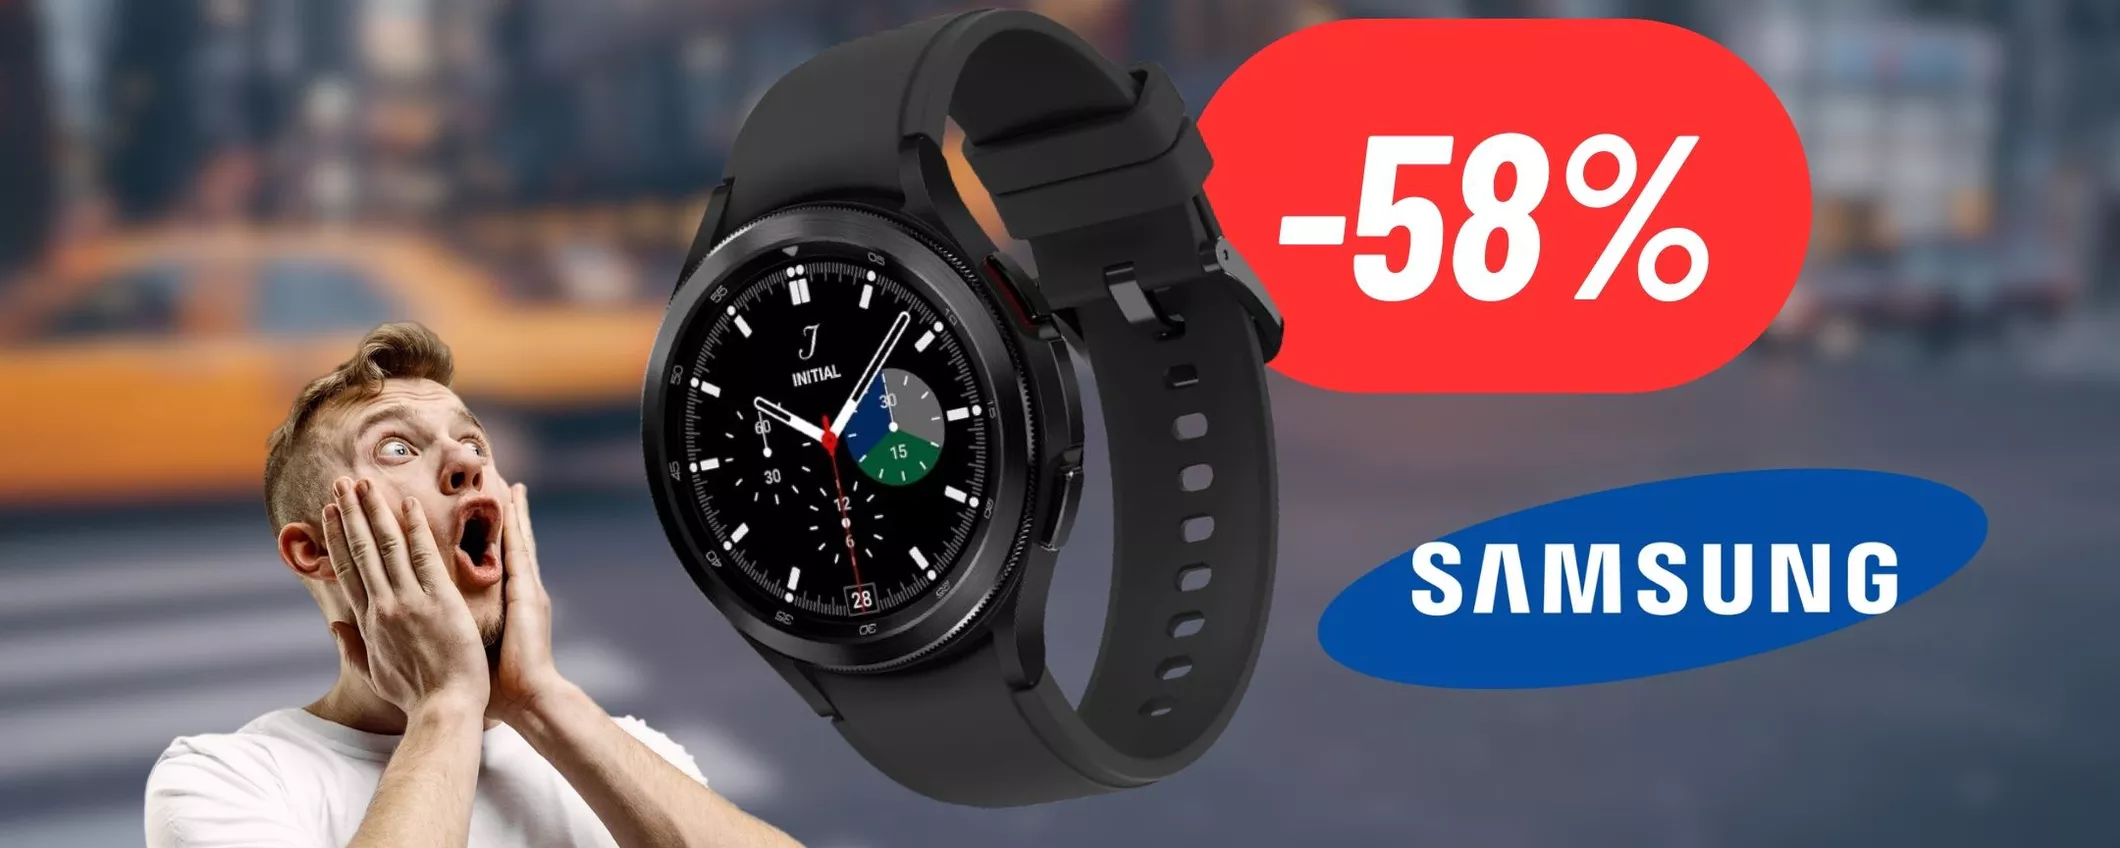 Samsung Galaxy Watch5 è uno smartwatch dalle mille funzioni: oggi risparmi 287€